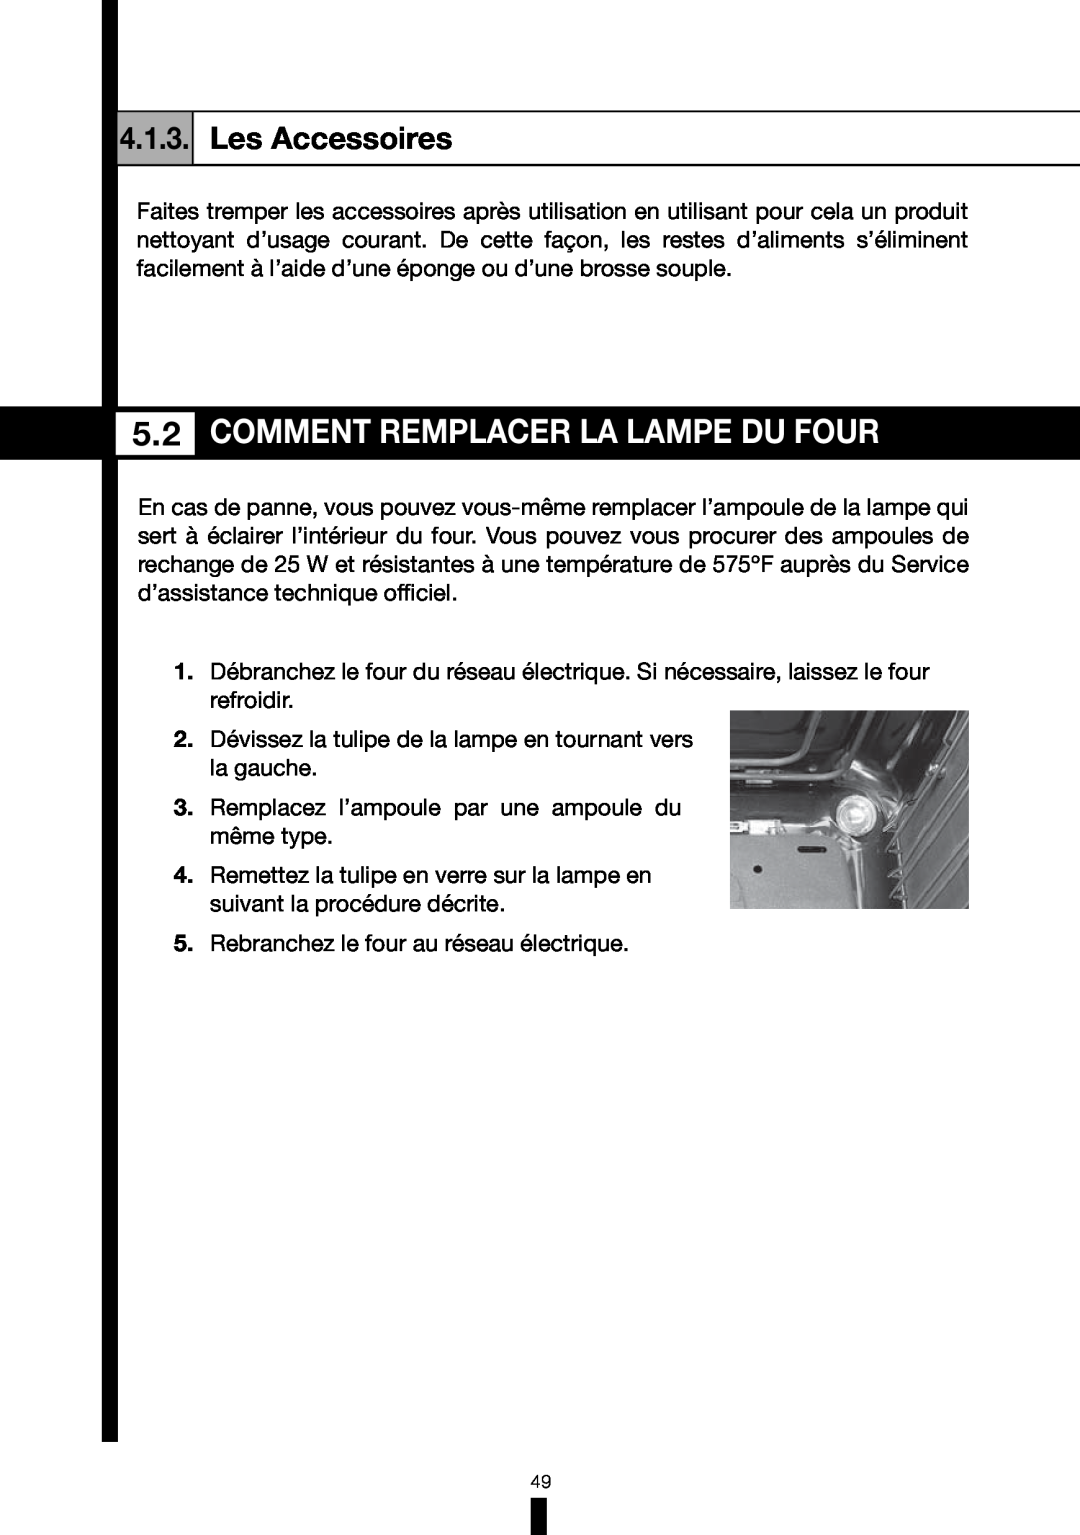 Fagor America 6HA-196BX manual Comment Remplacer La Lampe Du Four, Les Accessoires 